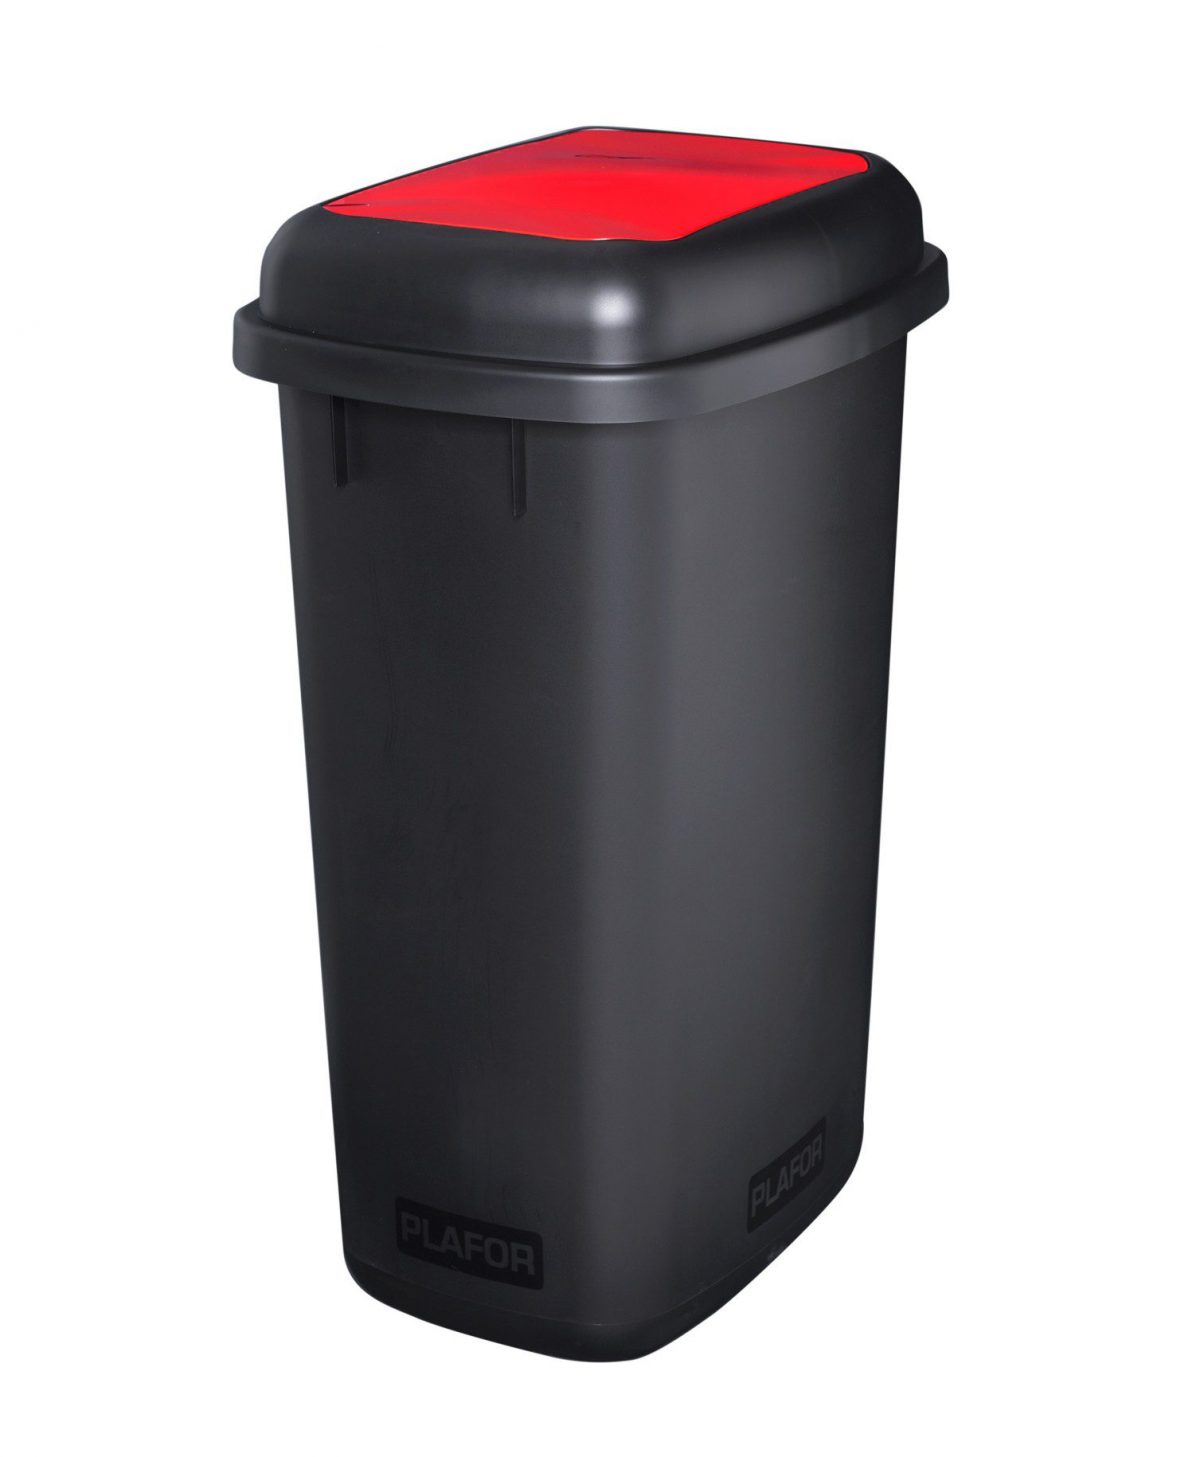 Мусорный бак PLAFOR Quatro bin seperate collection 657-04 (12л), черный с красной плавающей крышкой